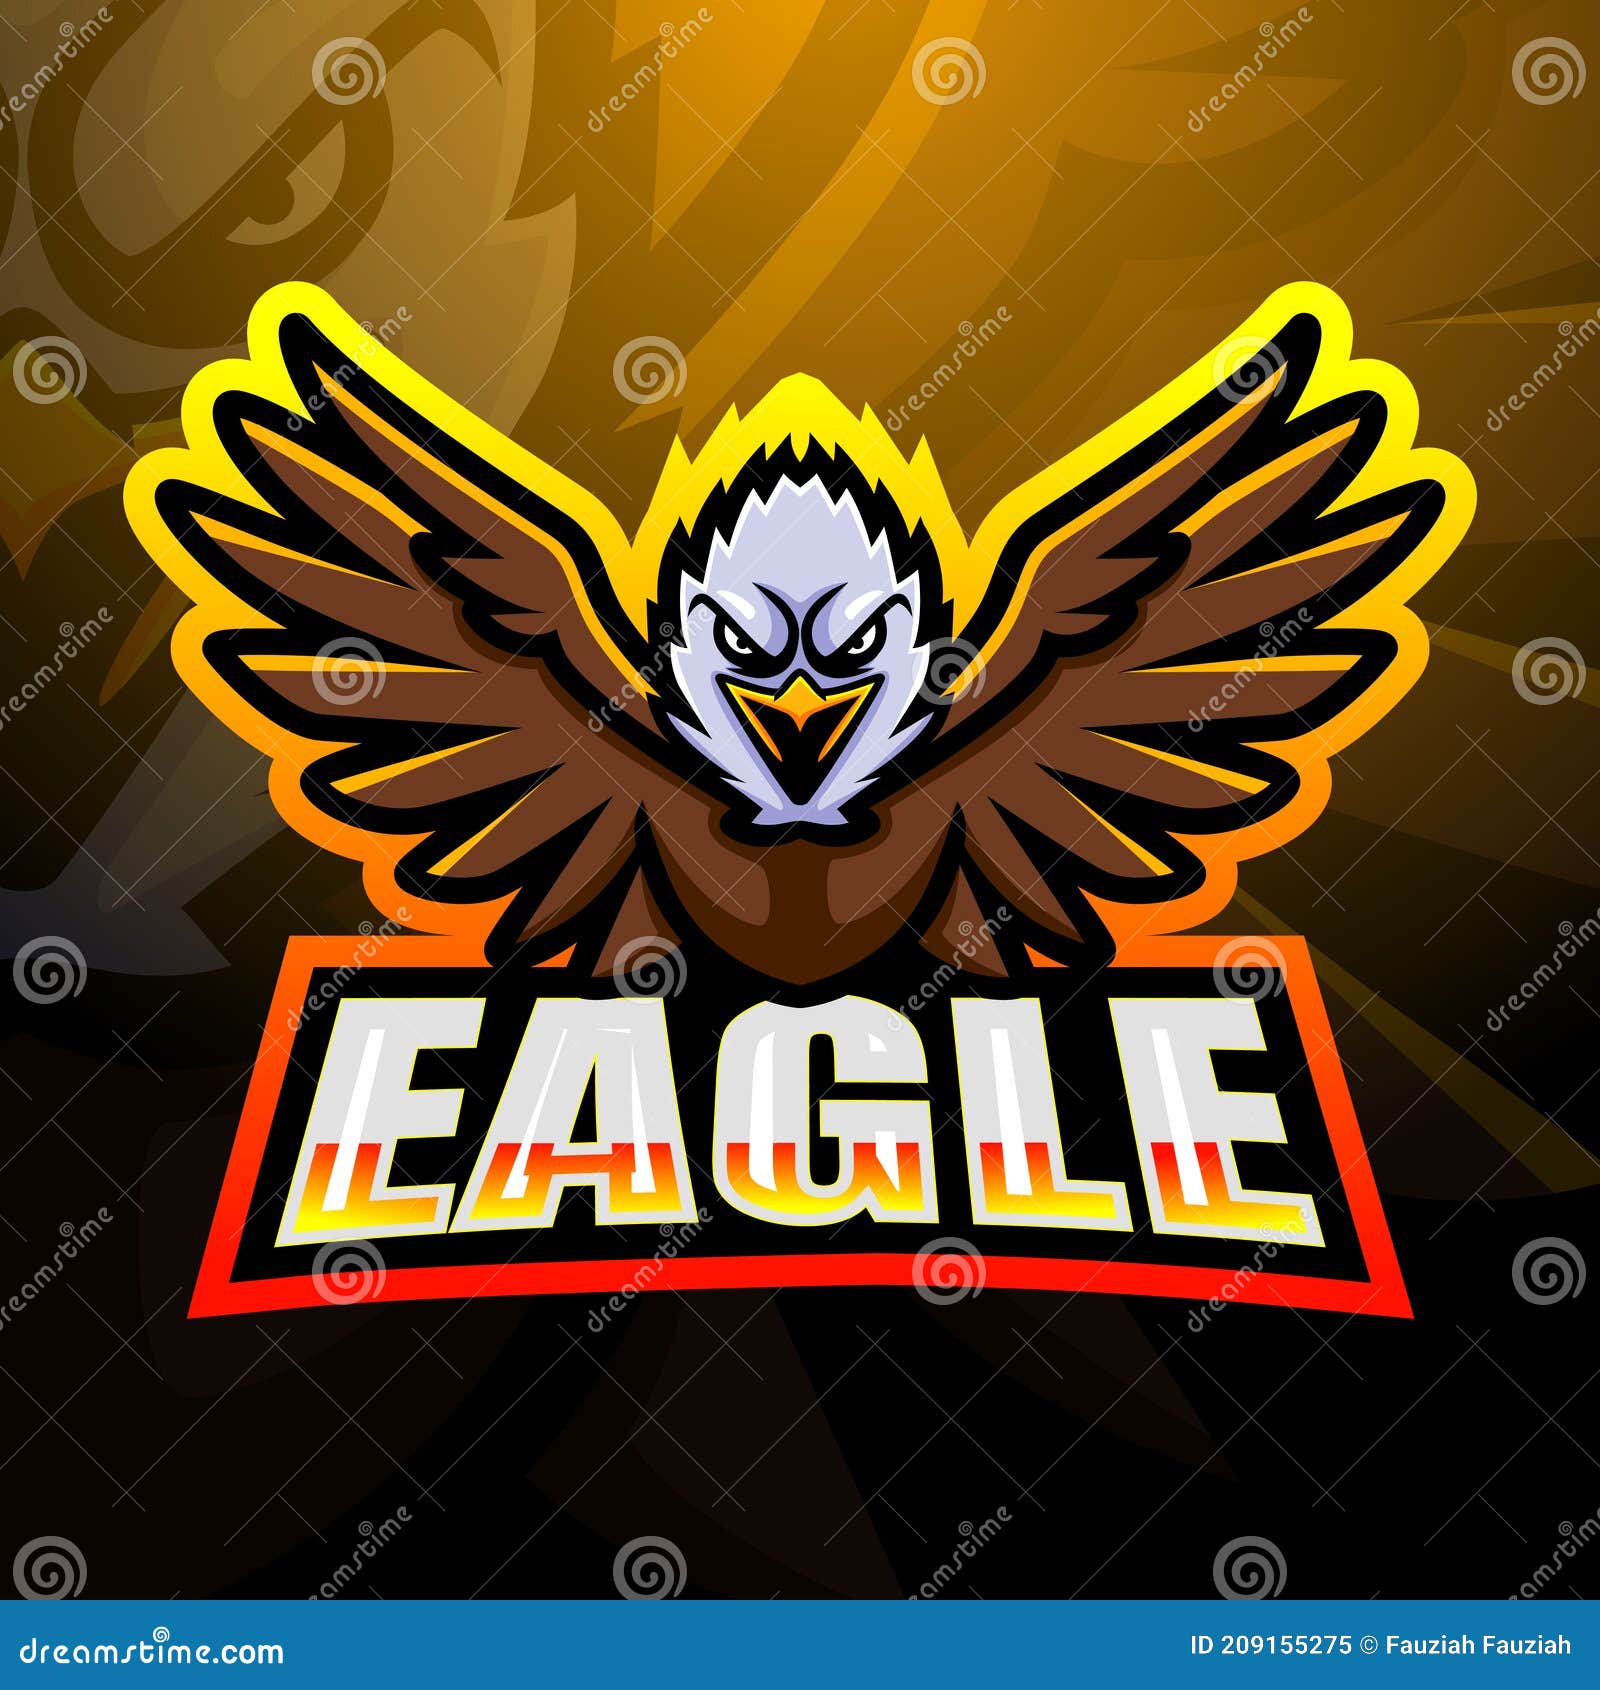 Design de logotipo de mascote eagles esport